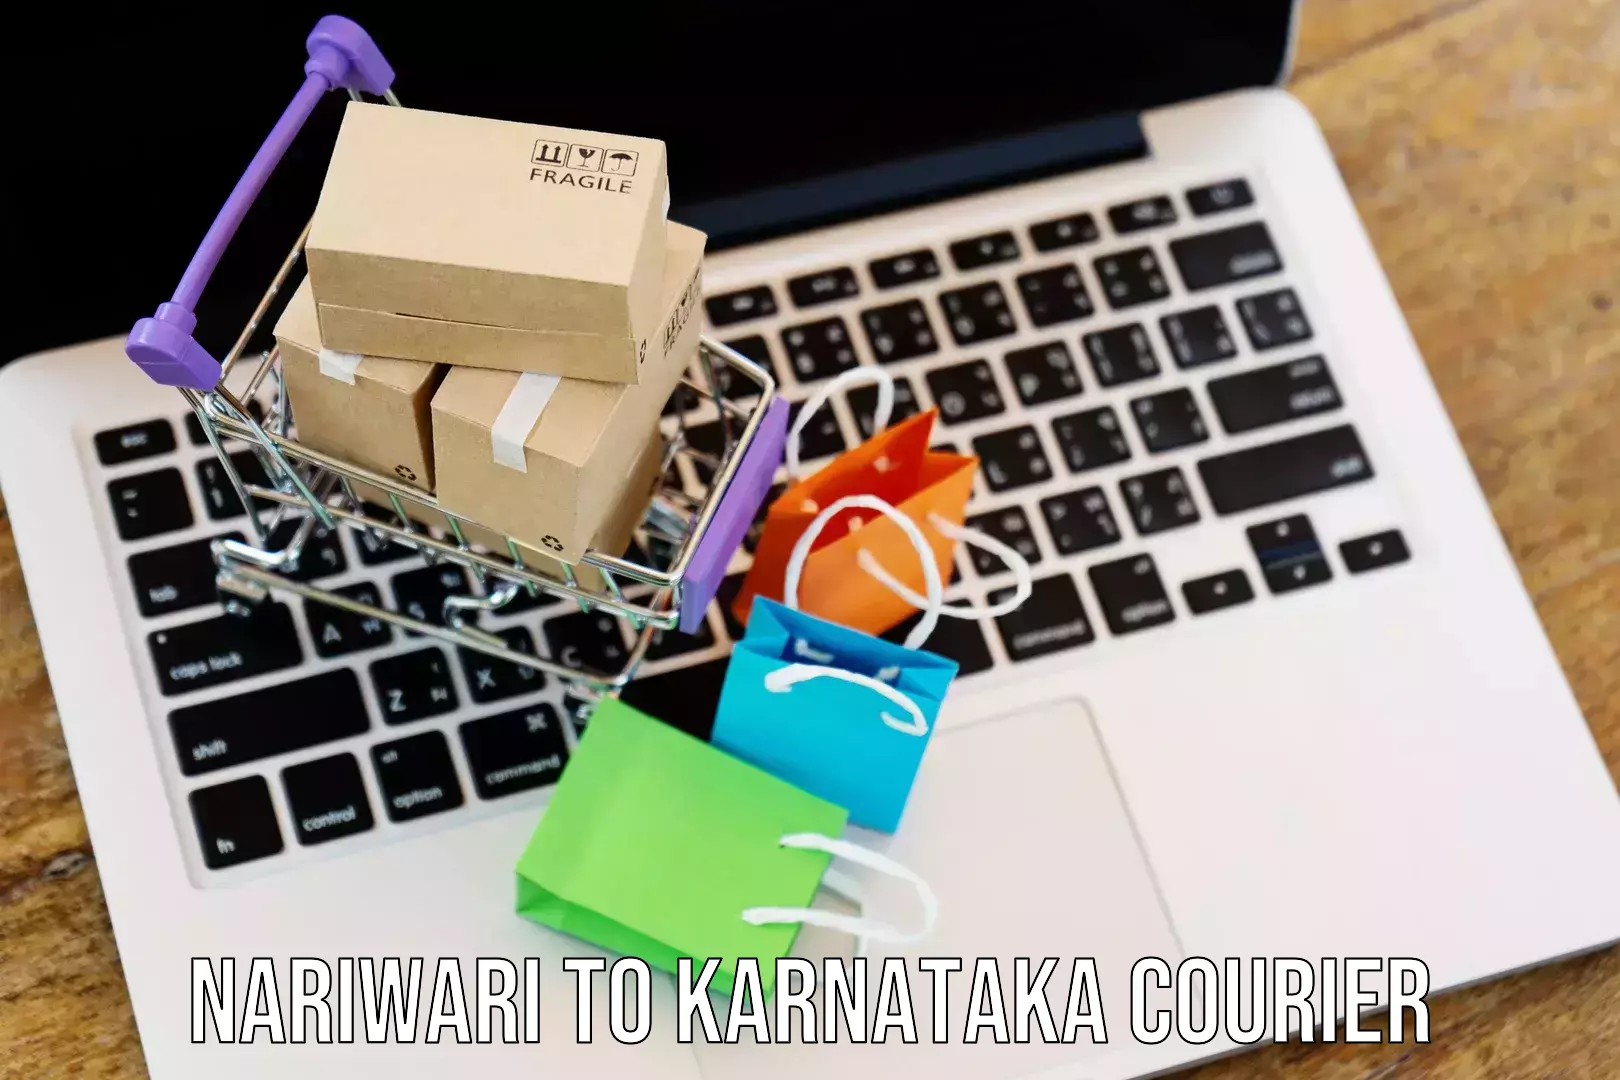 Large package courier Nariwari to Karnataka